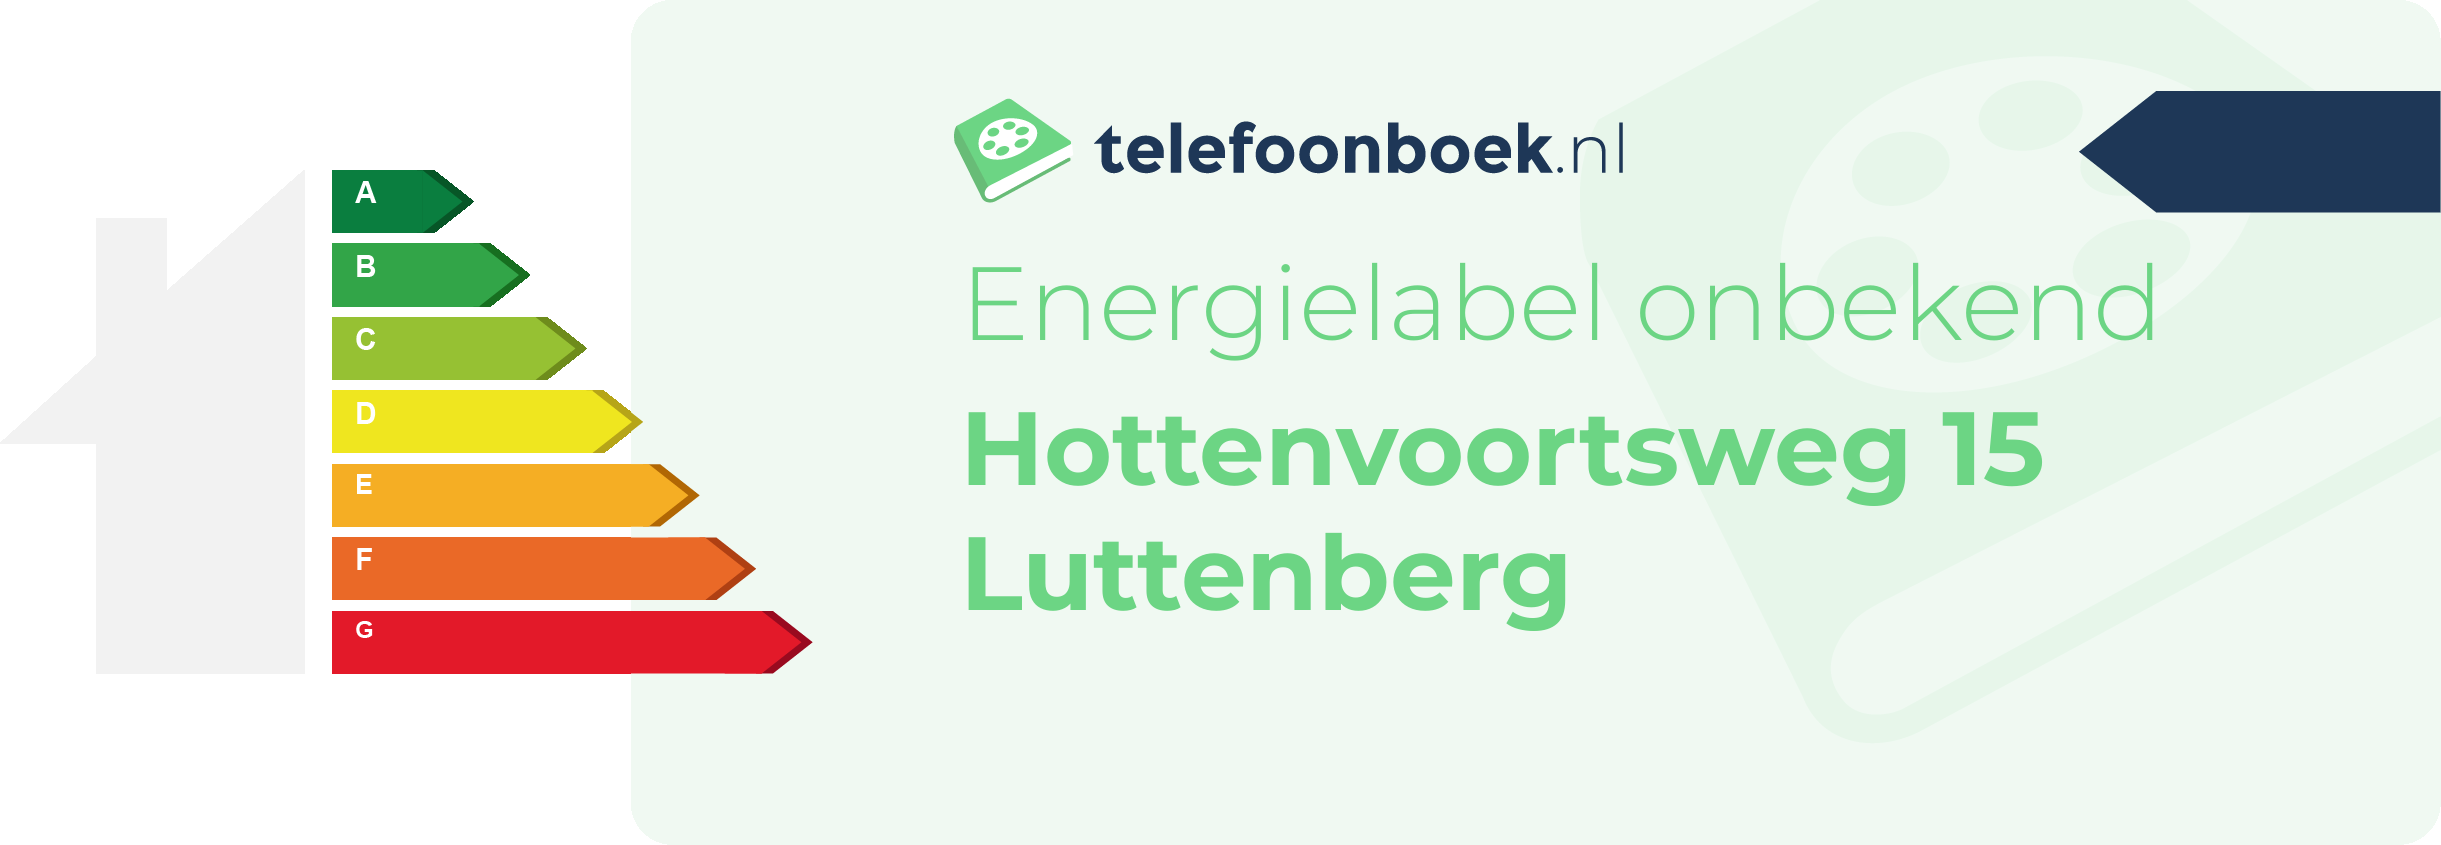 Energielabel Hottenvoortsweg 15 Luttenberg